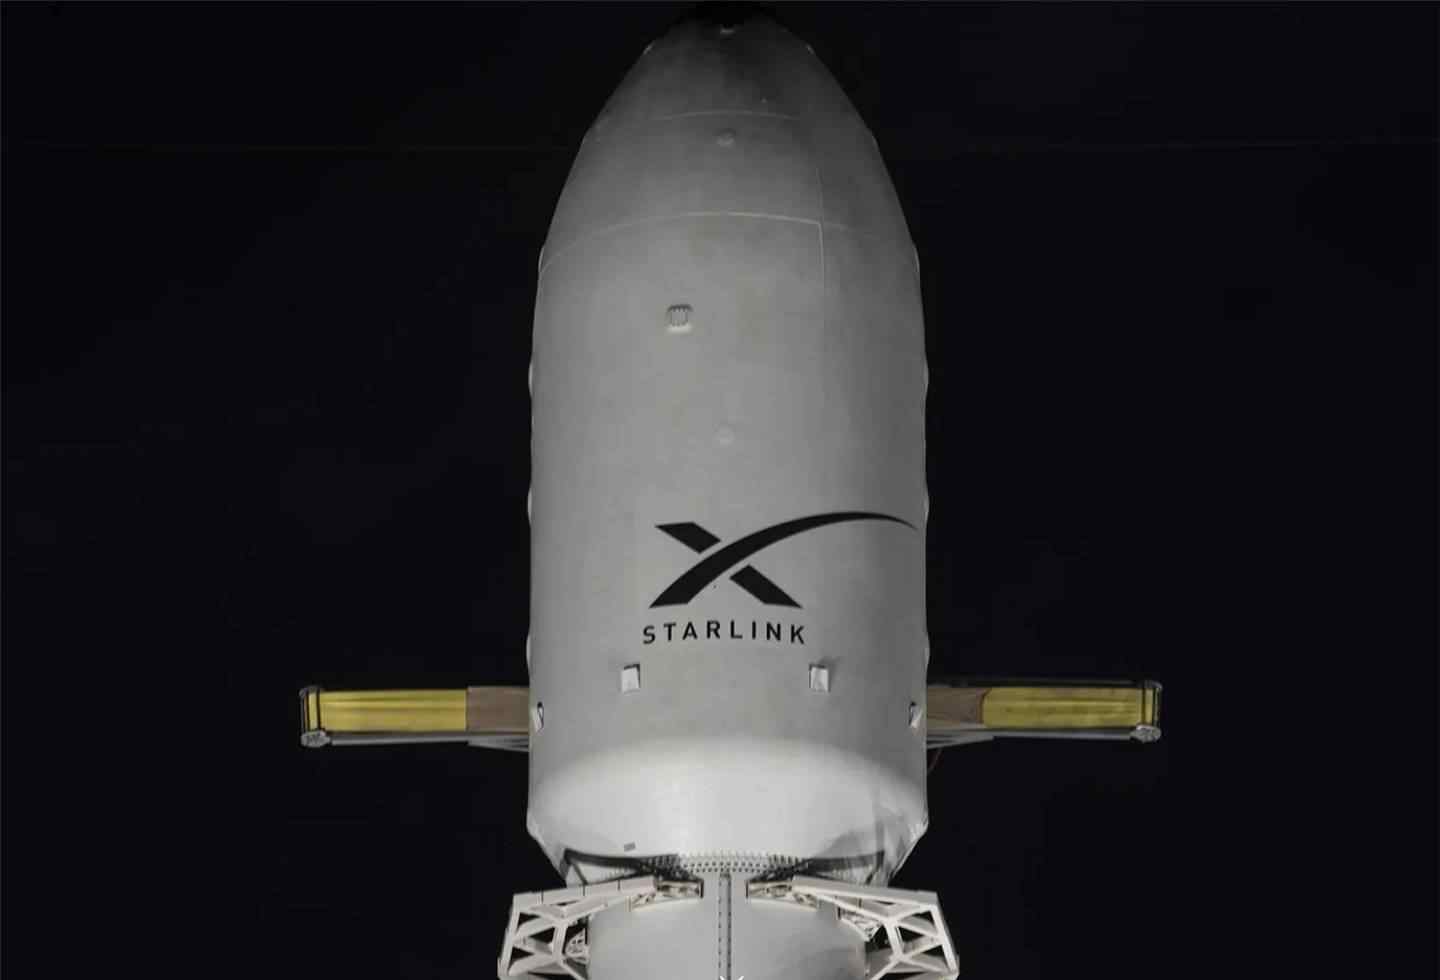 卫星发射最新消息 SpaceX 将于 1 月 19 日进行 2021 年首次 Starlink 卫星发射